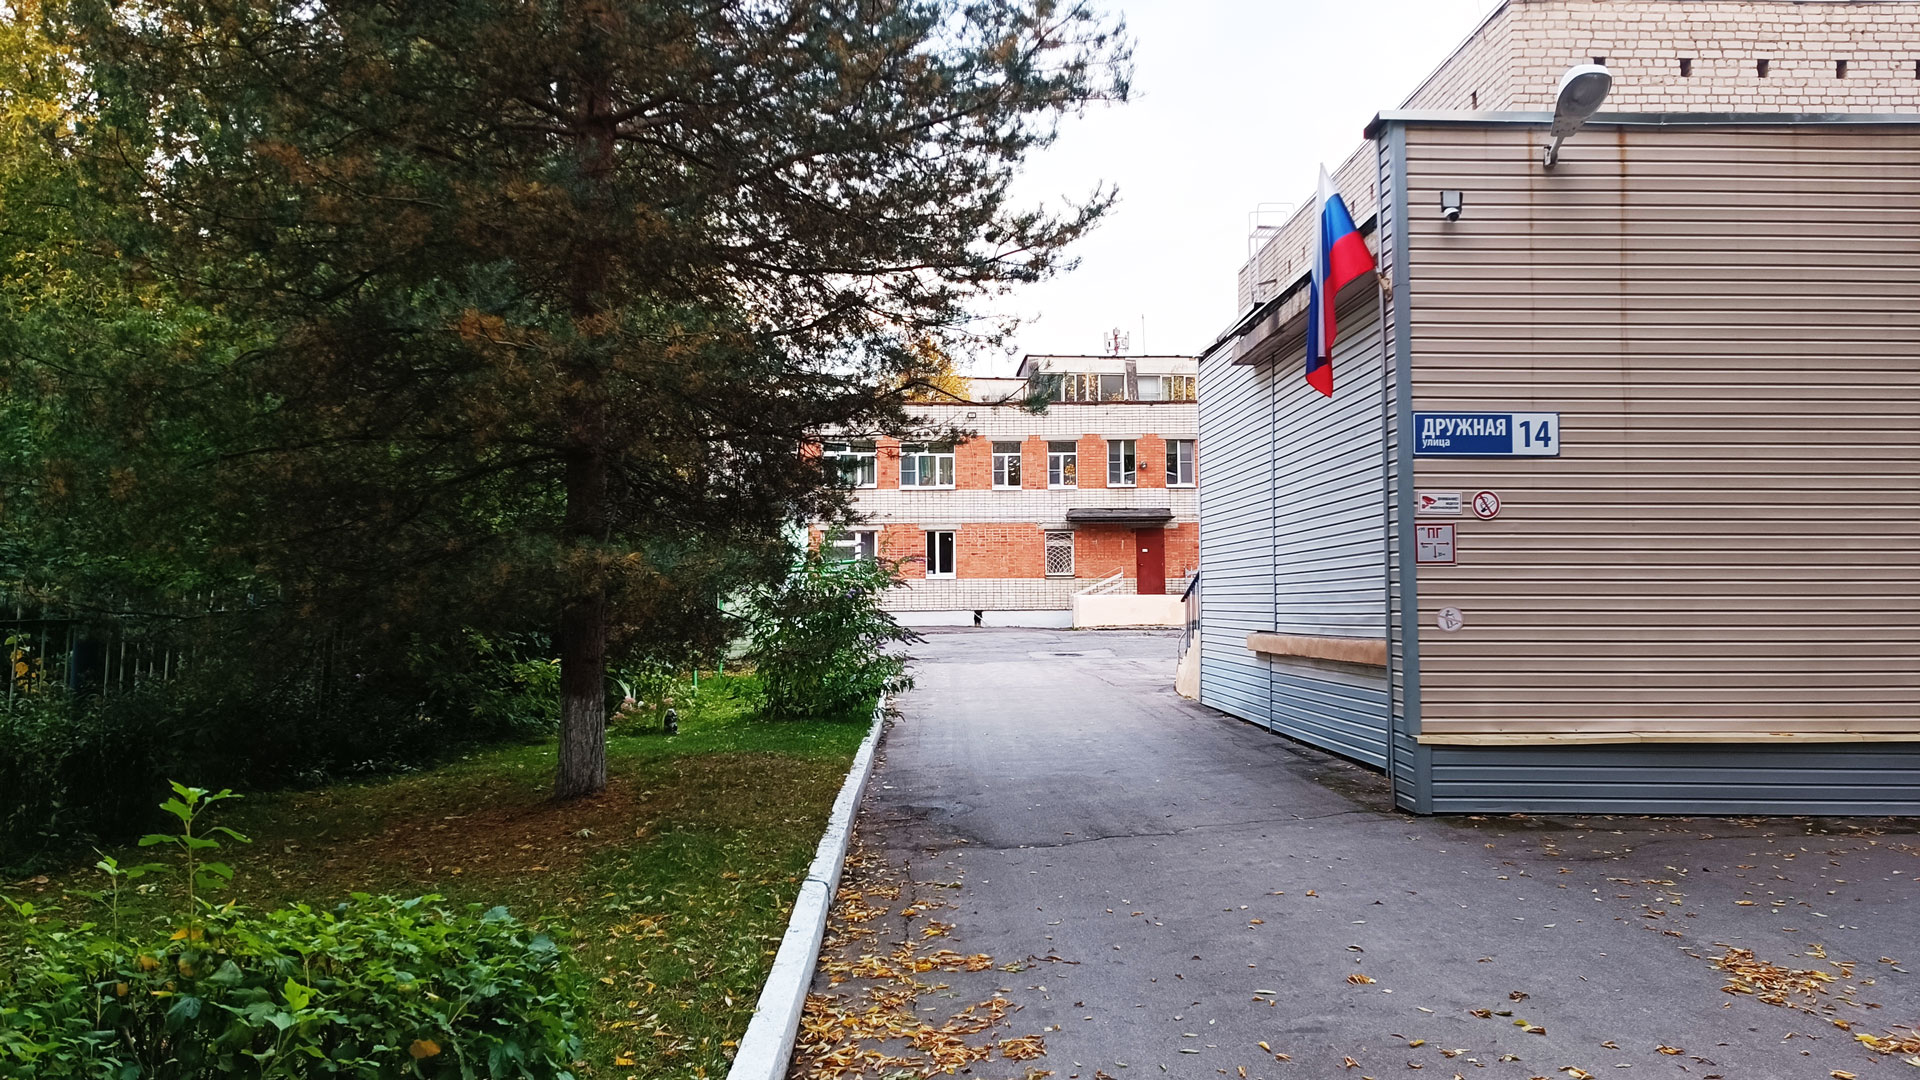 Детский сад 77 Ярославль: общий вид здания.